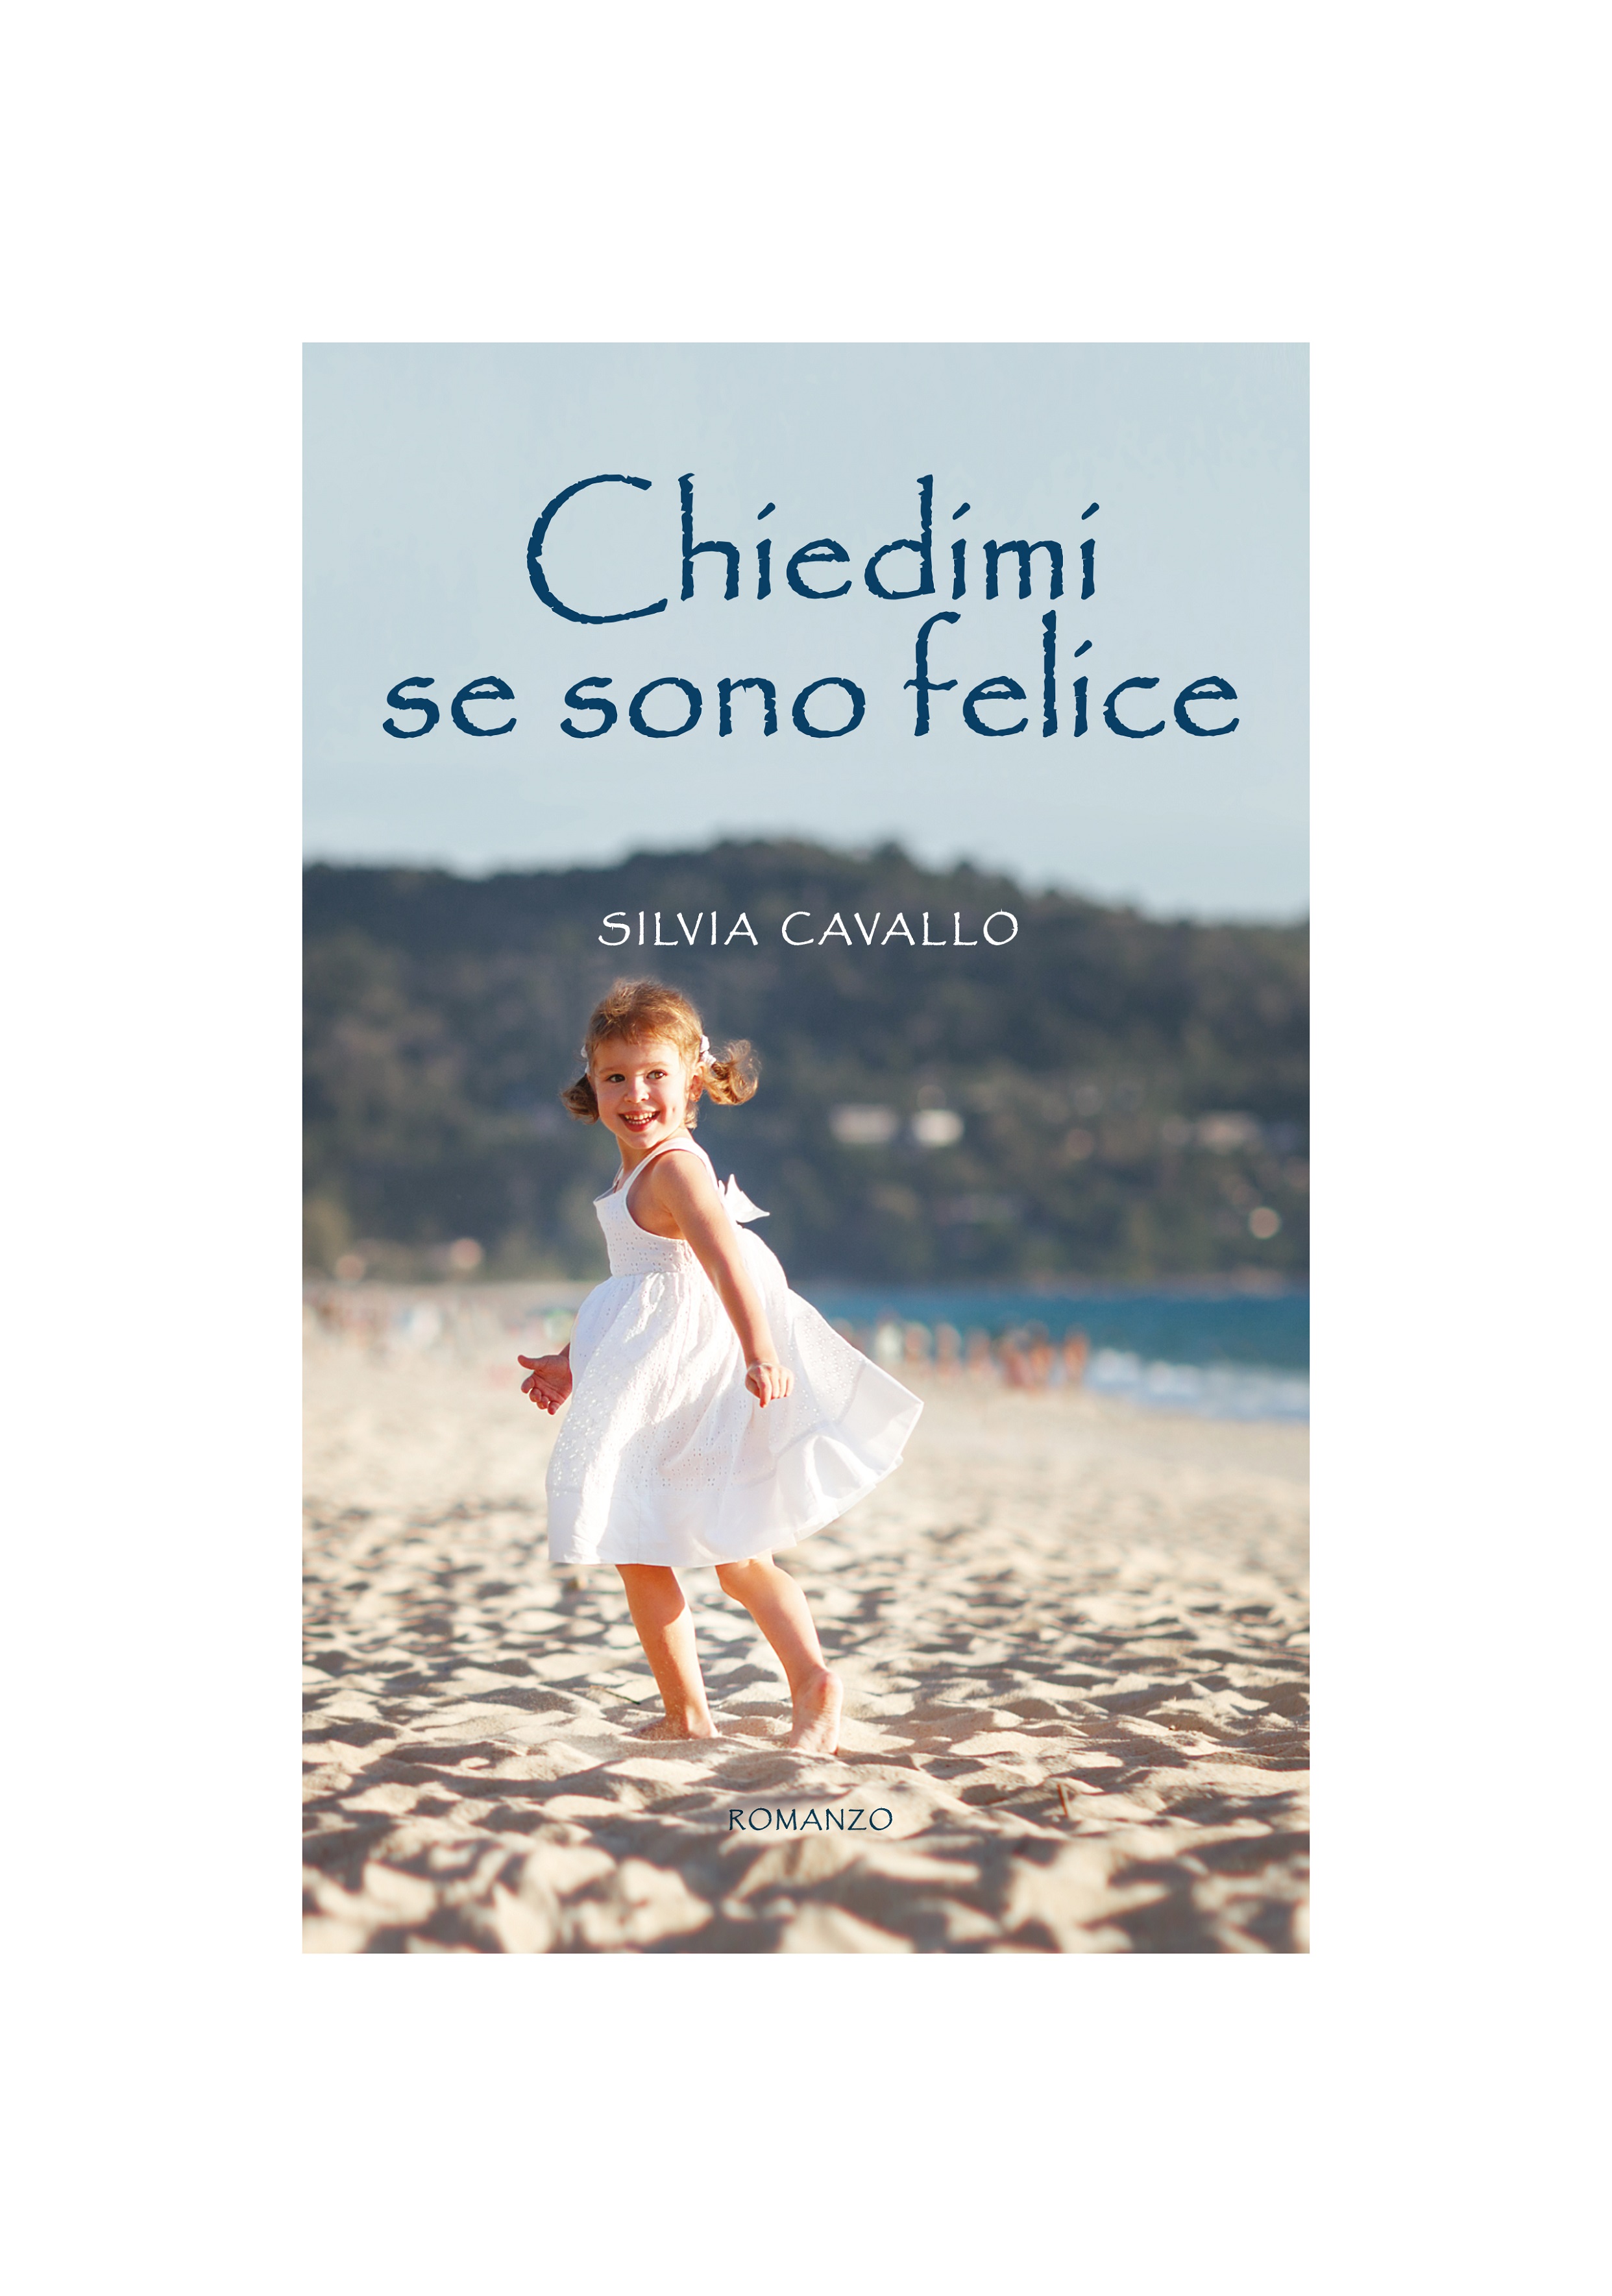 Mercoledì 13 marzo, “Chiedimi se sono felice”: il romanzo firmato da Silvia Cavallo viene presentato alle 17,30 alla biblioteca Arduino di Moncalieri, per il ciclo “Autori tra i libri”